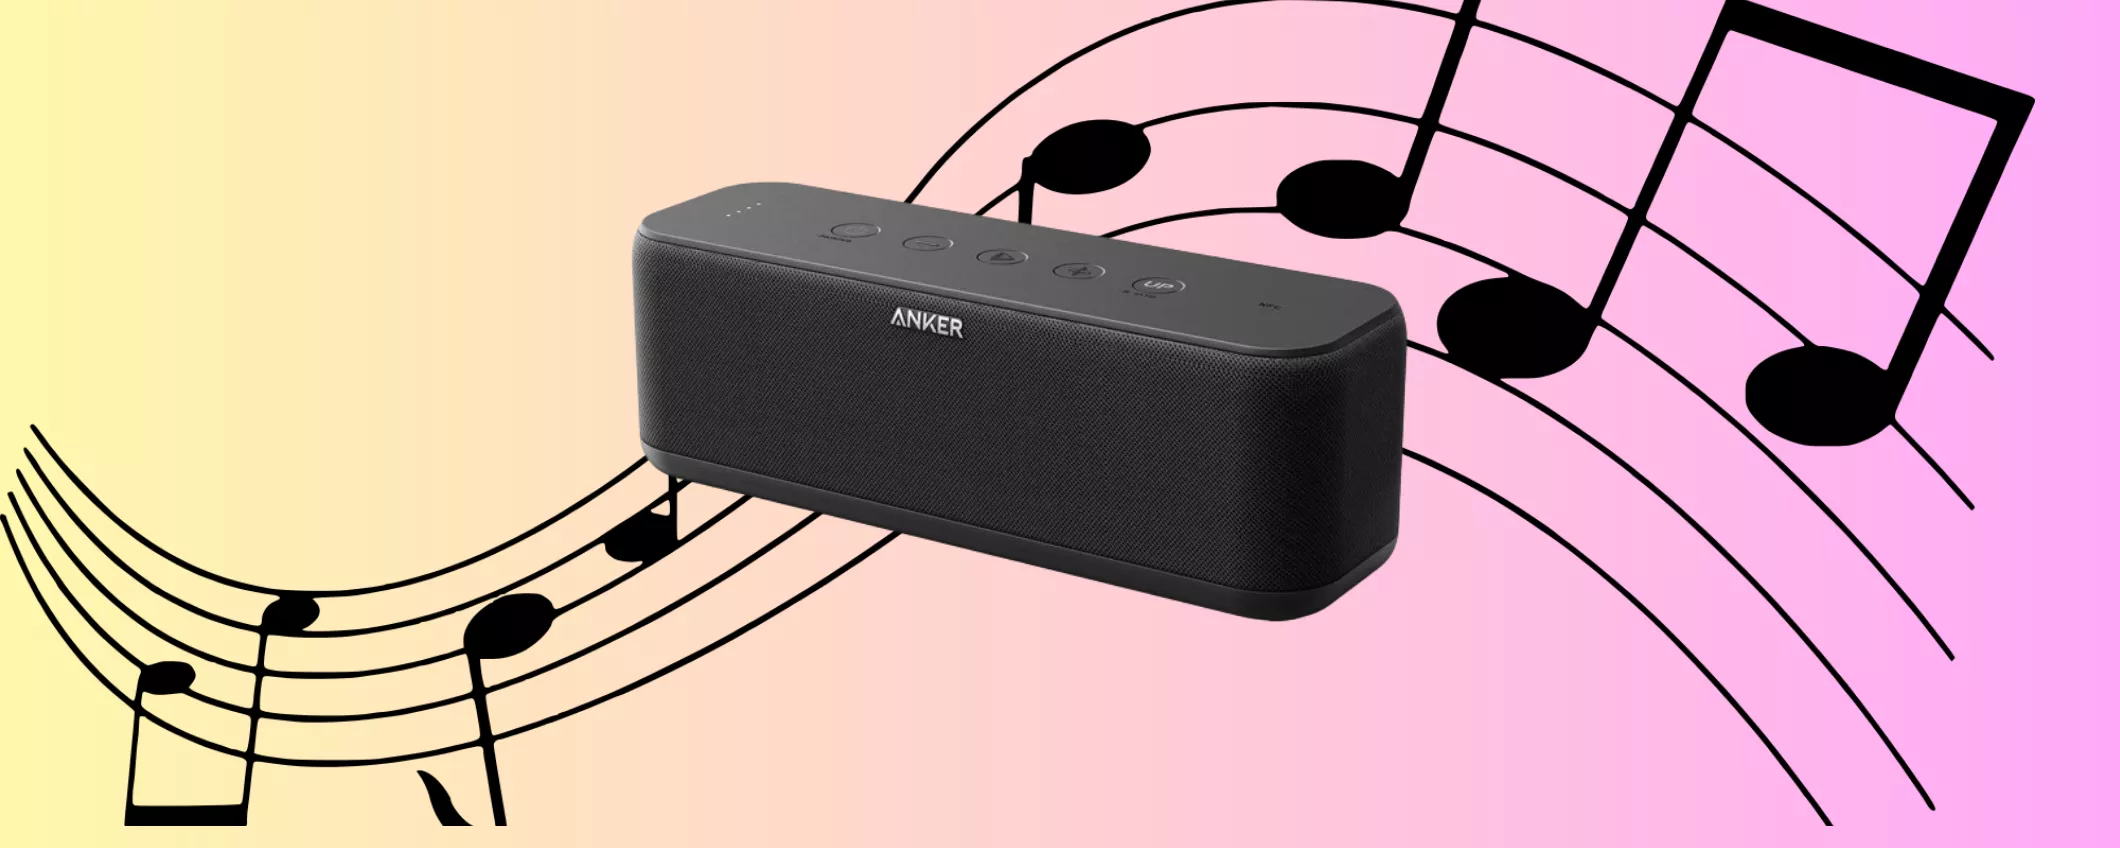 La tua musica OVUNQUE con lo Speaker Bluetooth Anker: applica il COUPON DI SCONTO